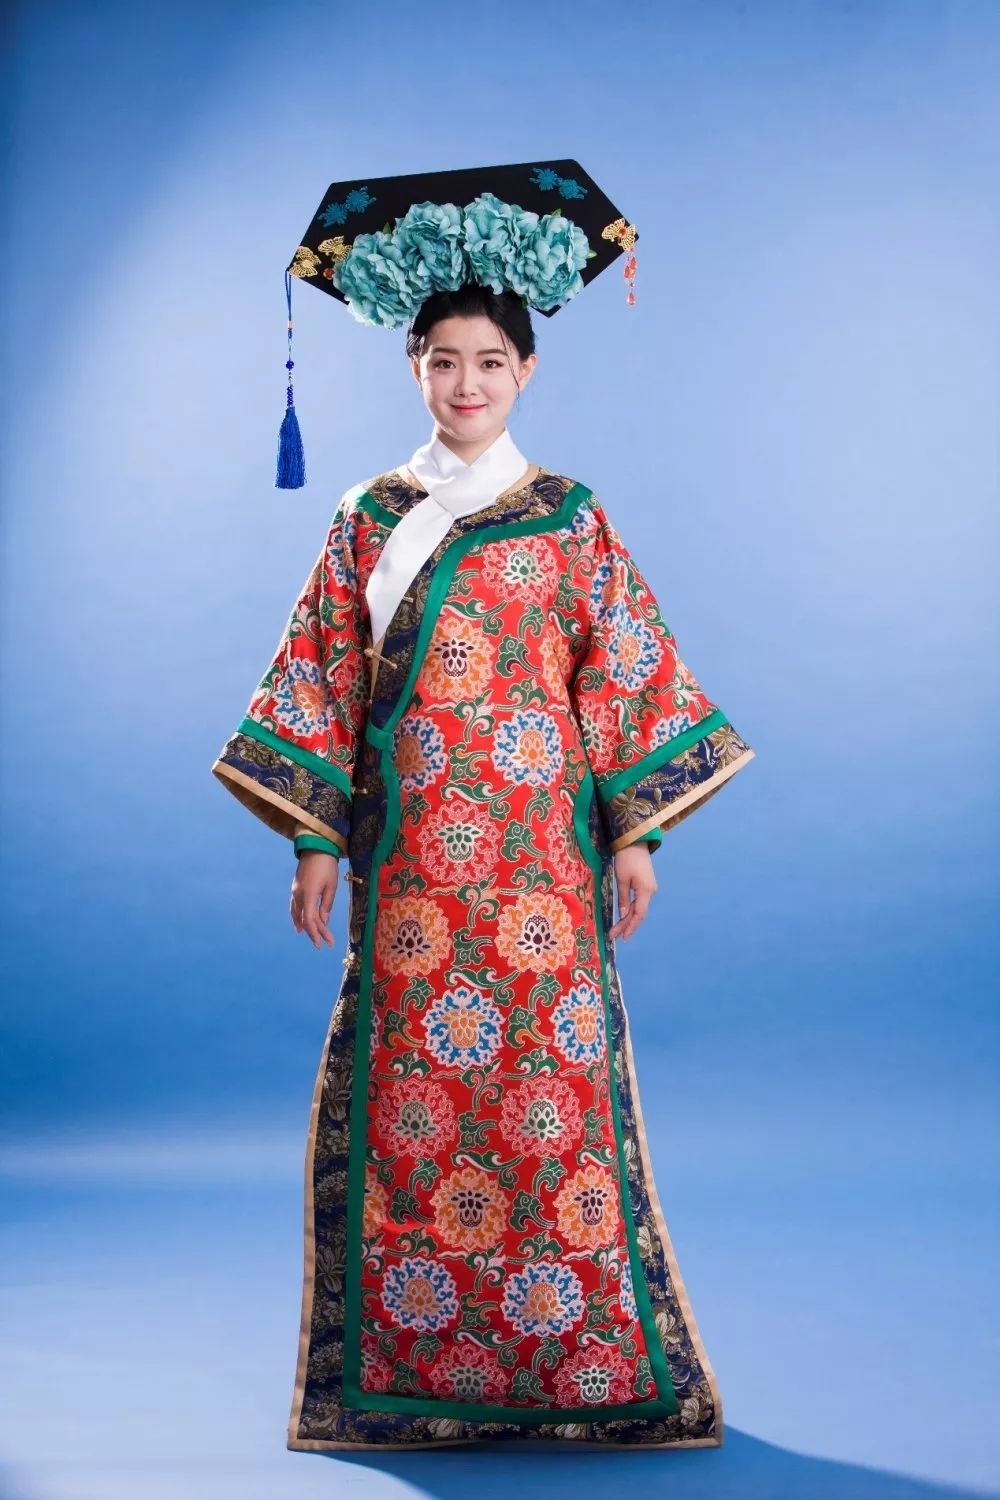 身为省级非物质文化遗产满族服饰制作技艺第四代传承人的贾淑娟是